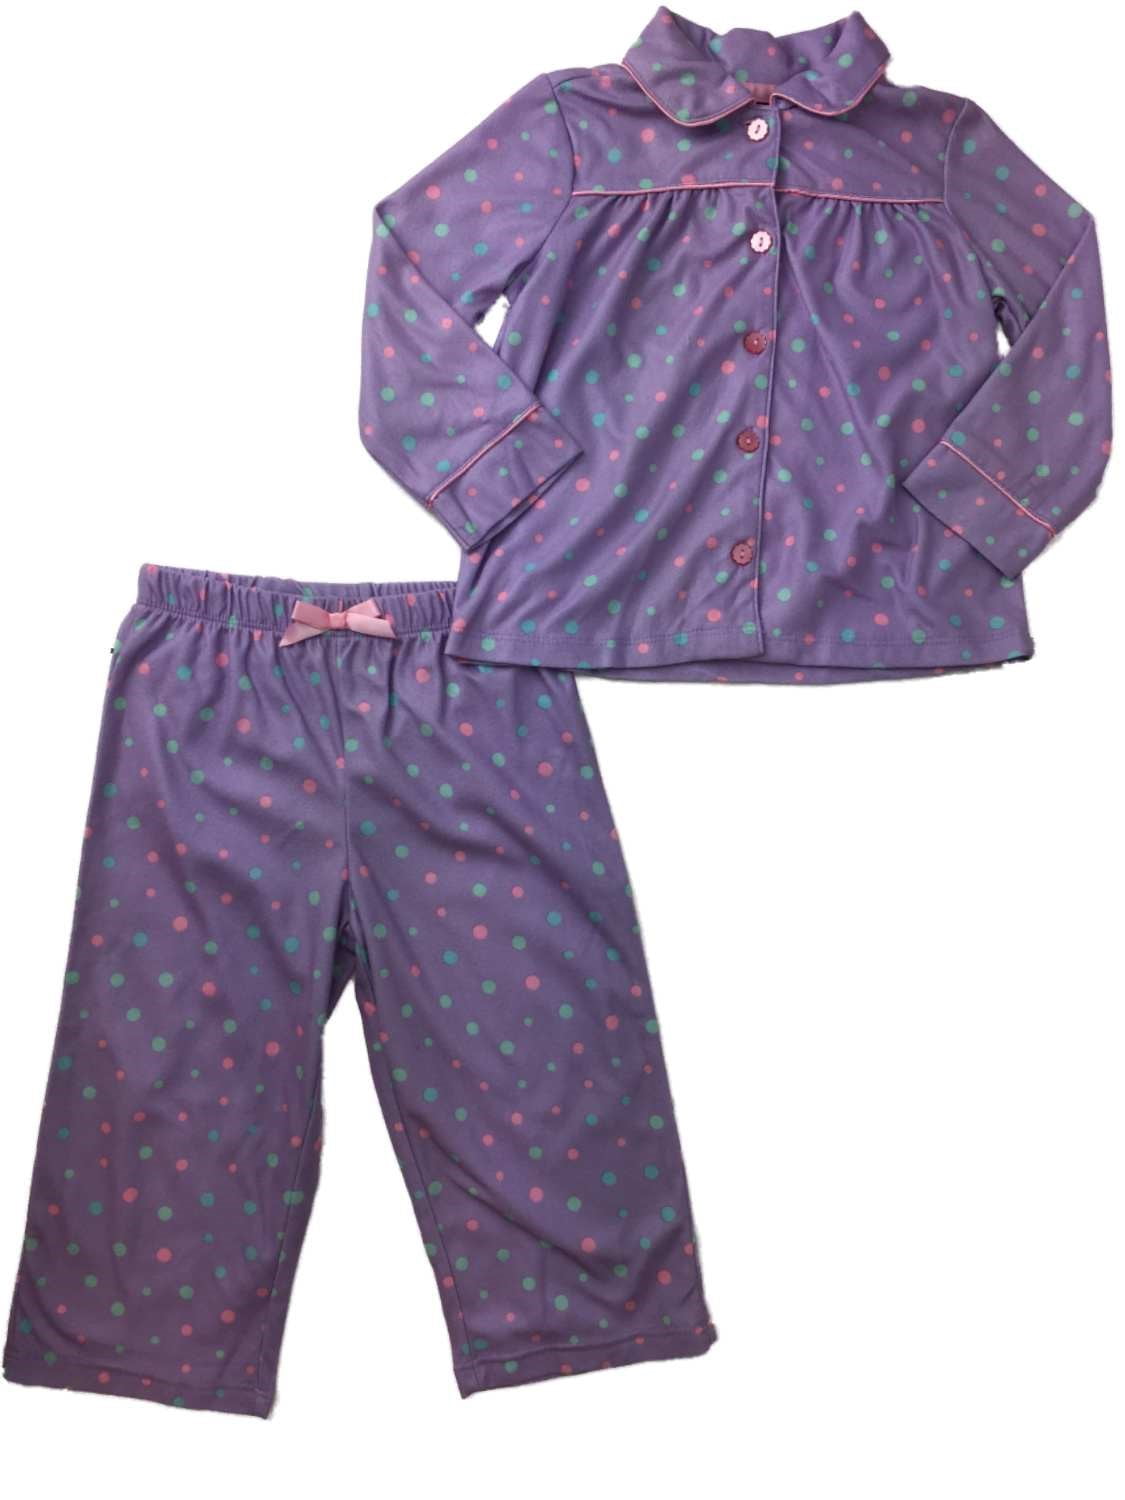 Toddler Girls Purple & Mint Fuzzy Polka Dot Pajamas Flannel 2-Piece ...